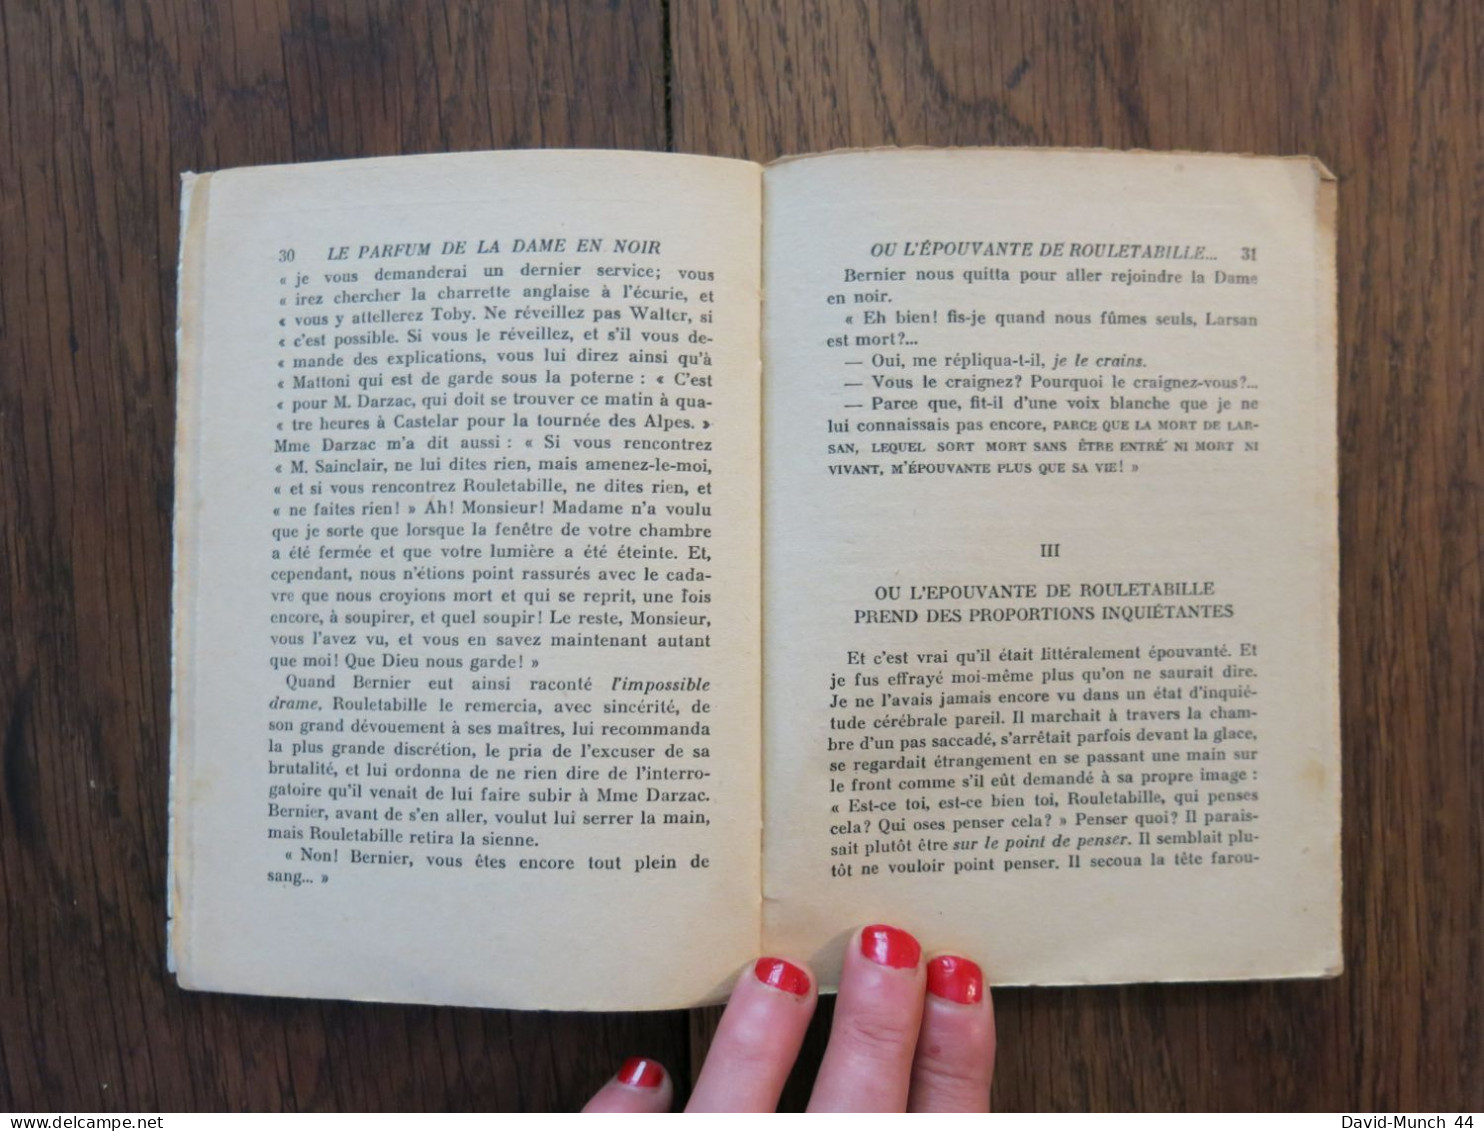 Le parfum de la dame en noir, 2ème partie de Gaston Leroux. Pierre Lafitte, Collection "Le point d'interrogation". 1932